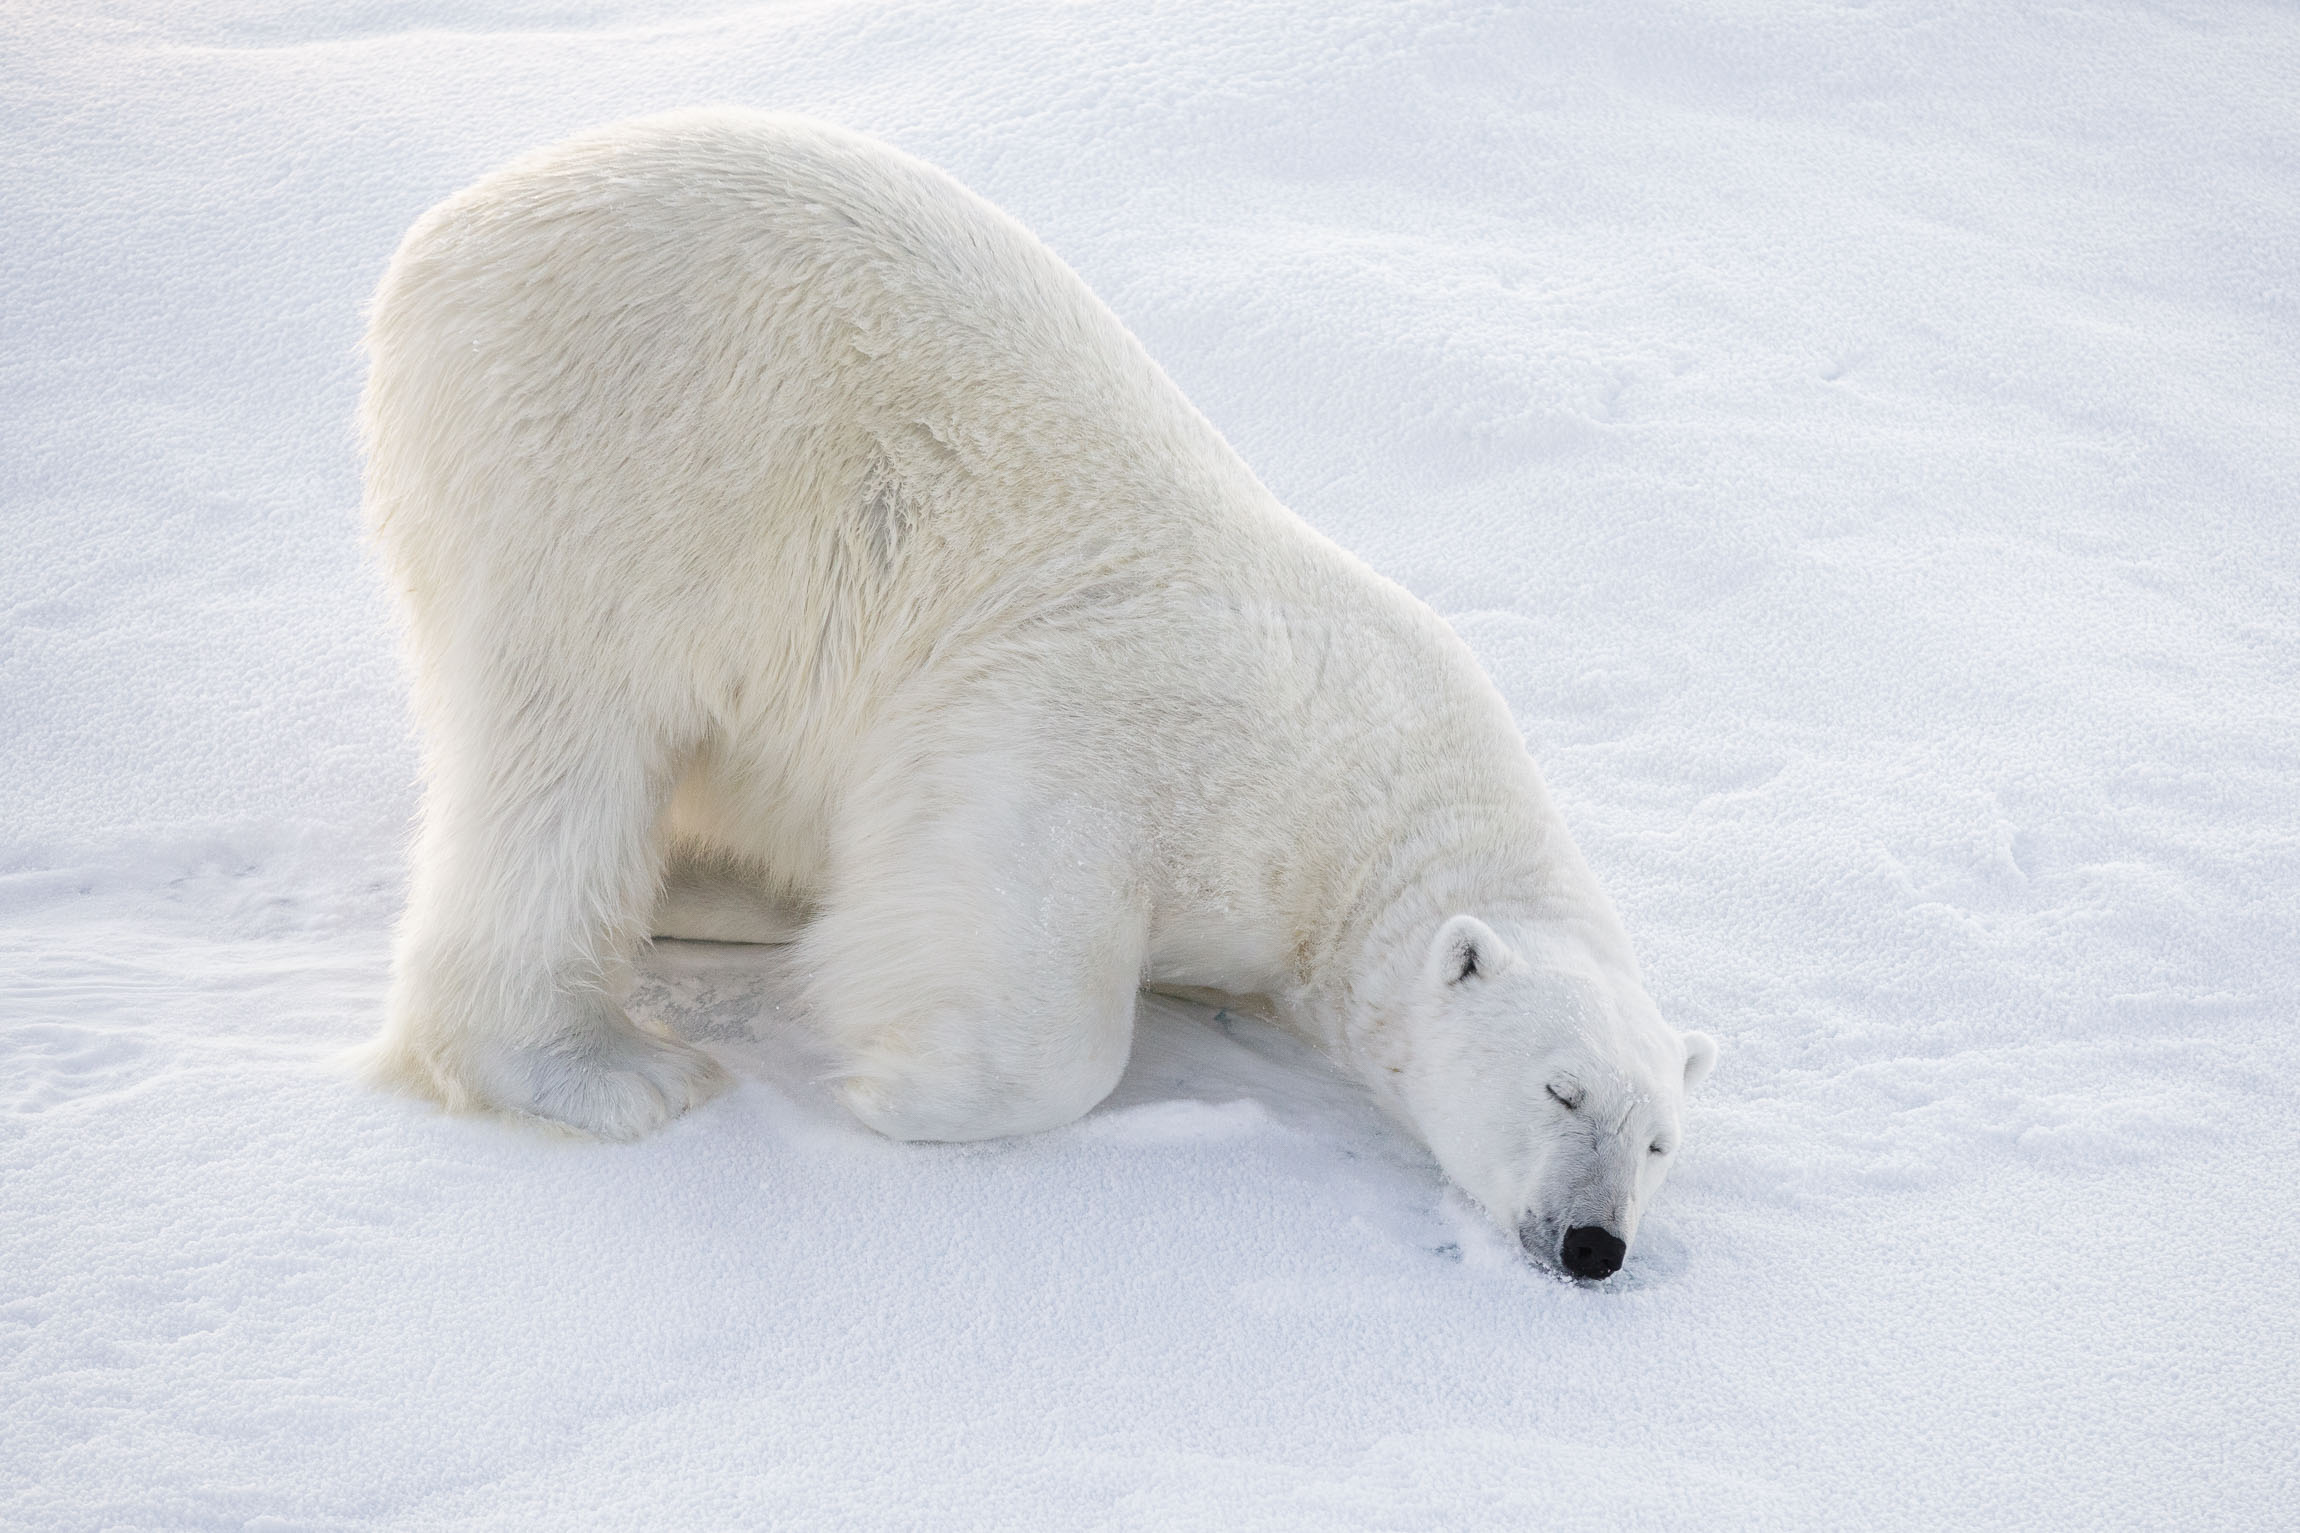 A polar bear sleeps on the ice